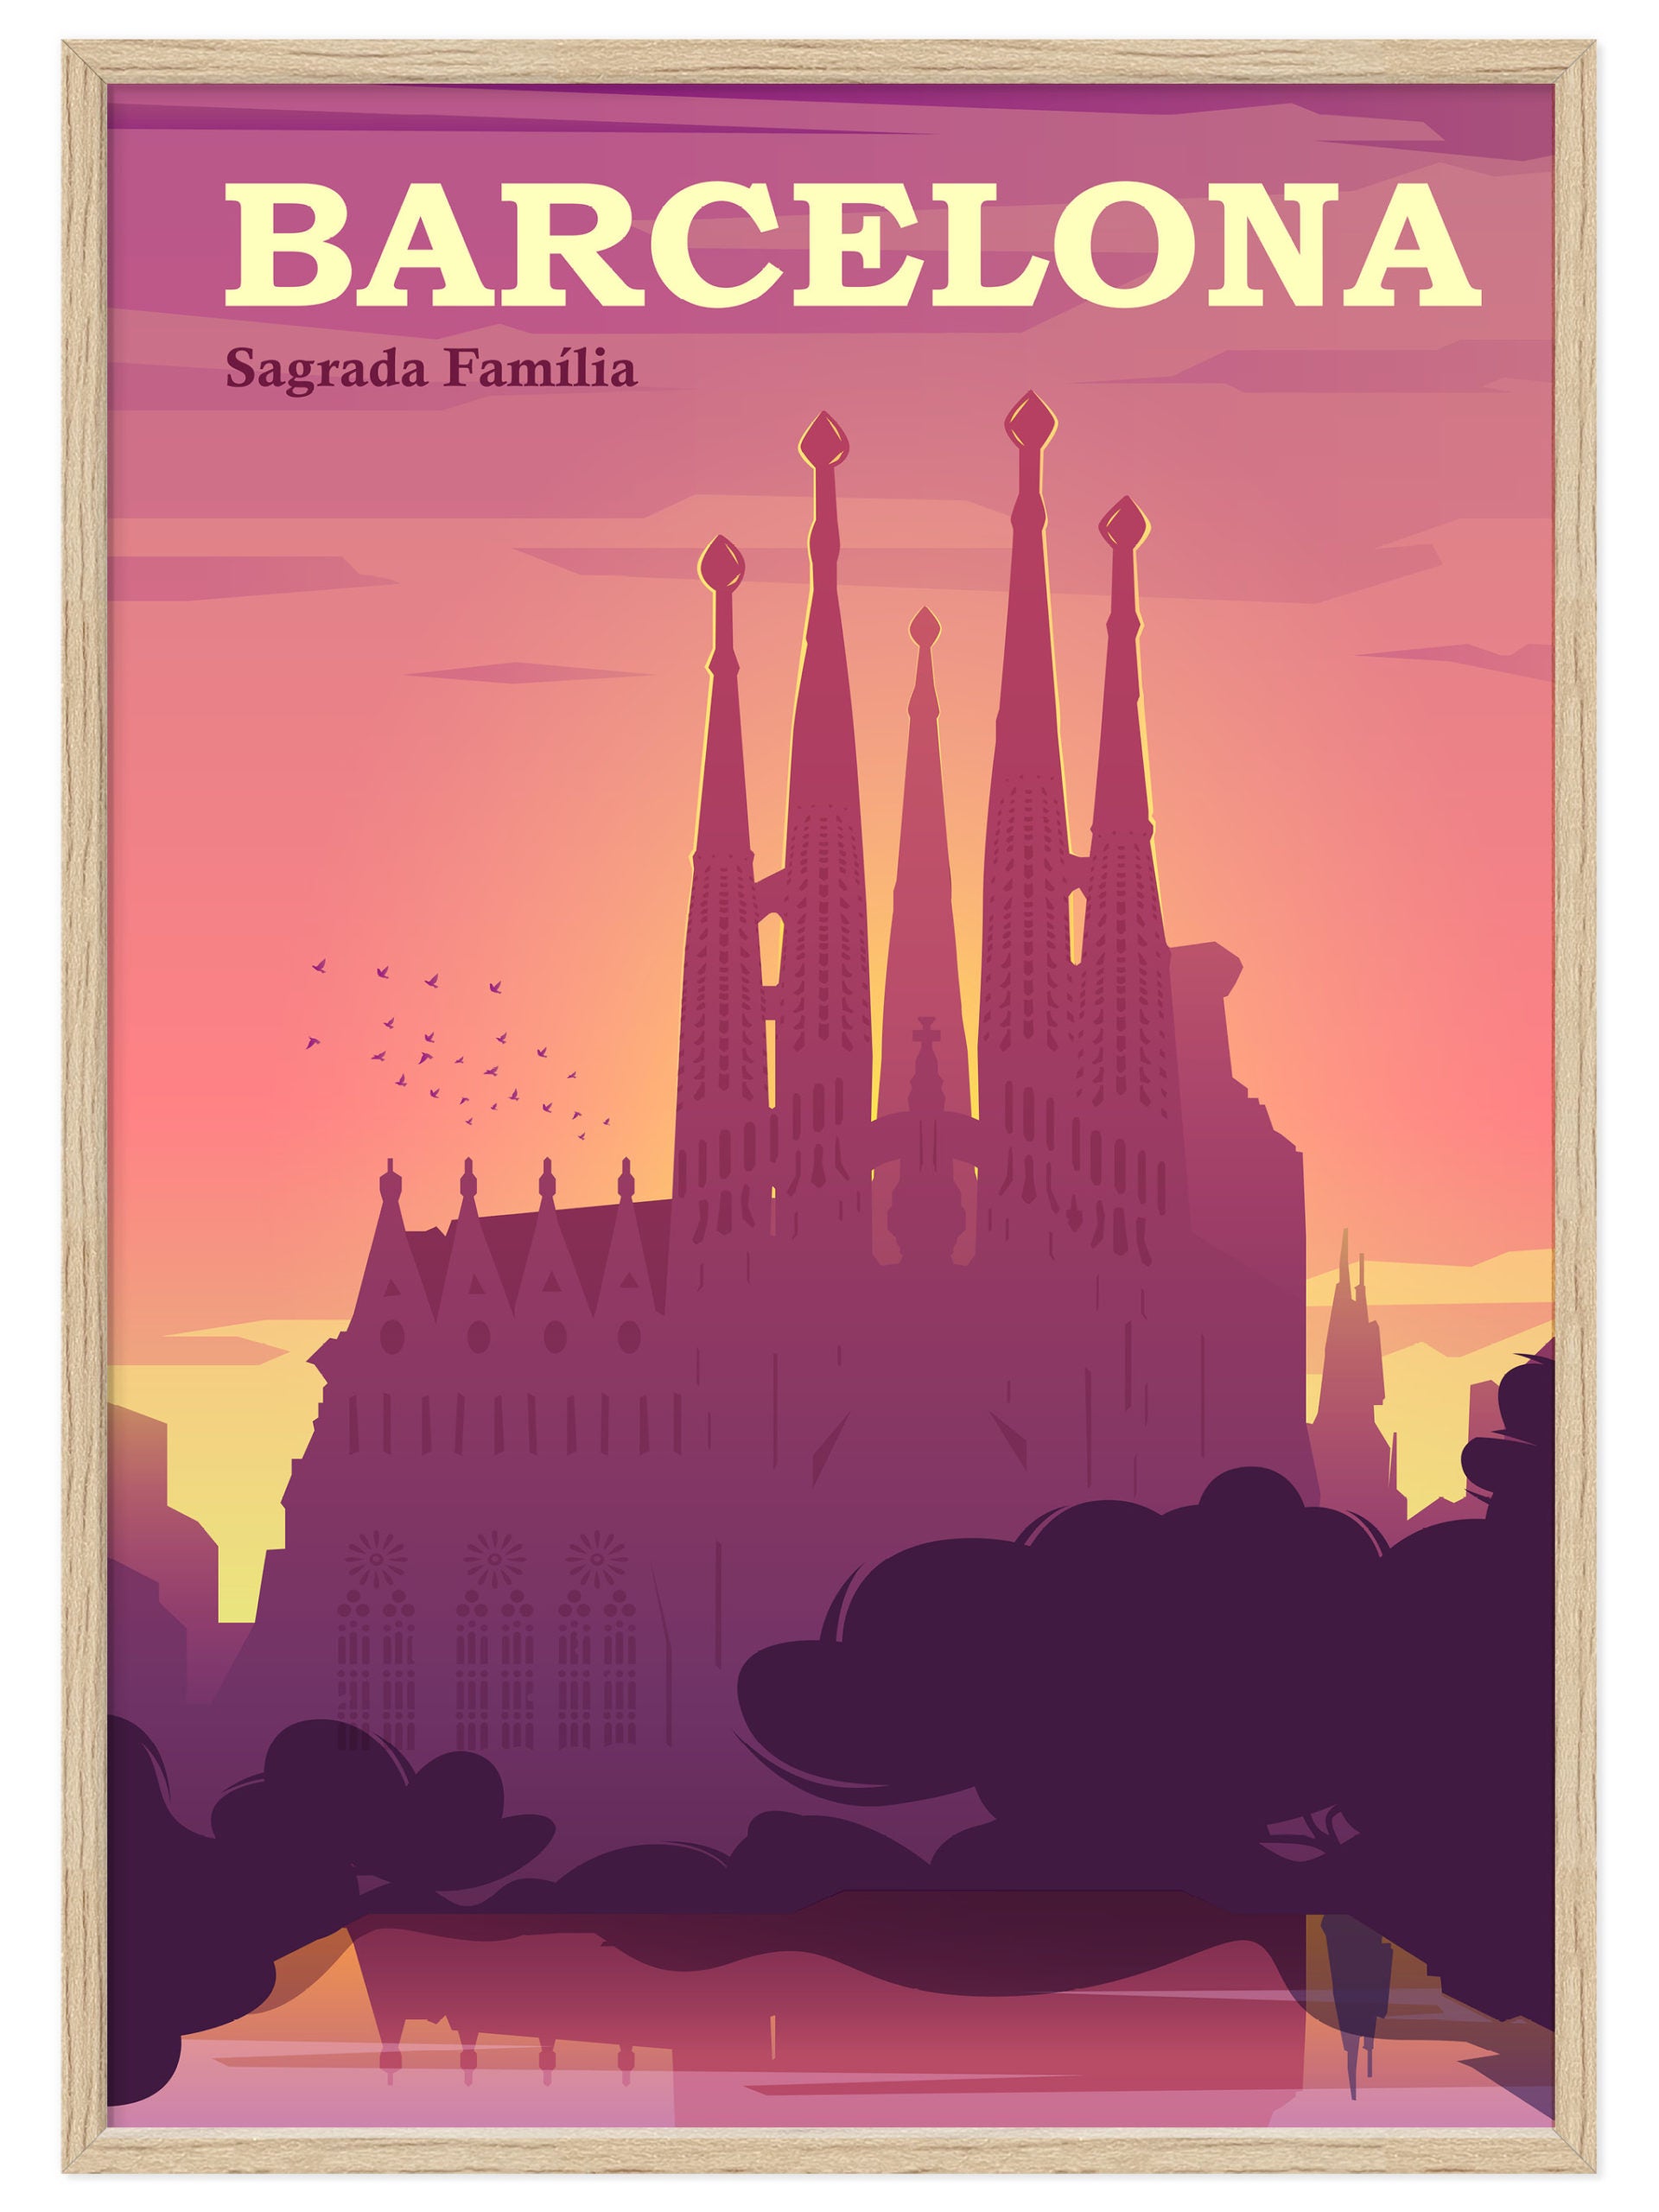 Barcelona Poster